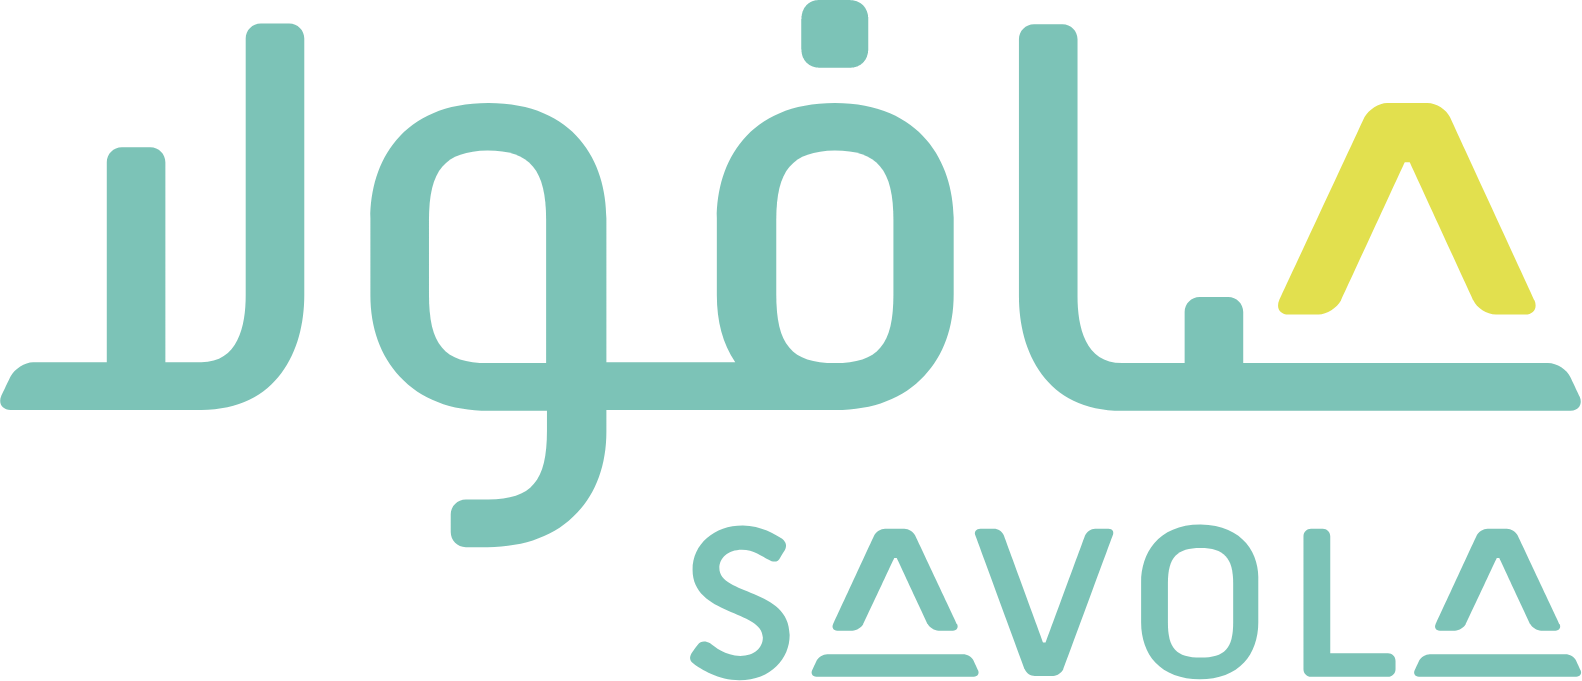 Savola Group logo large for dark backgrounds (transparent PNG)